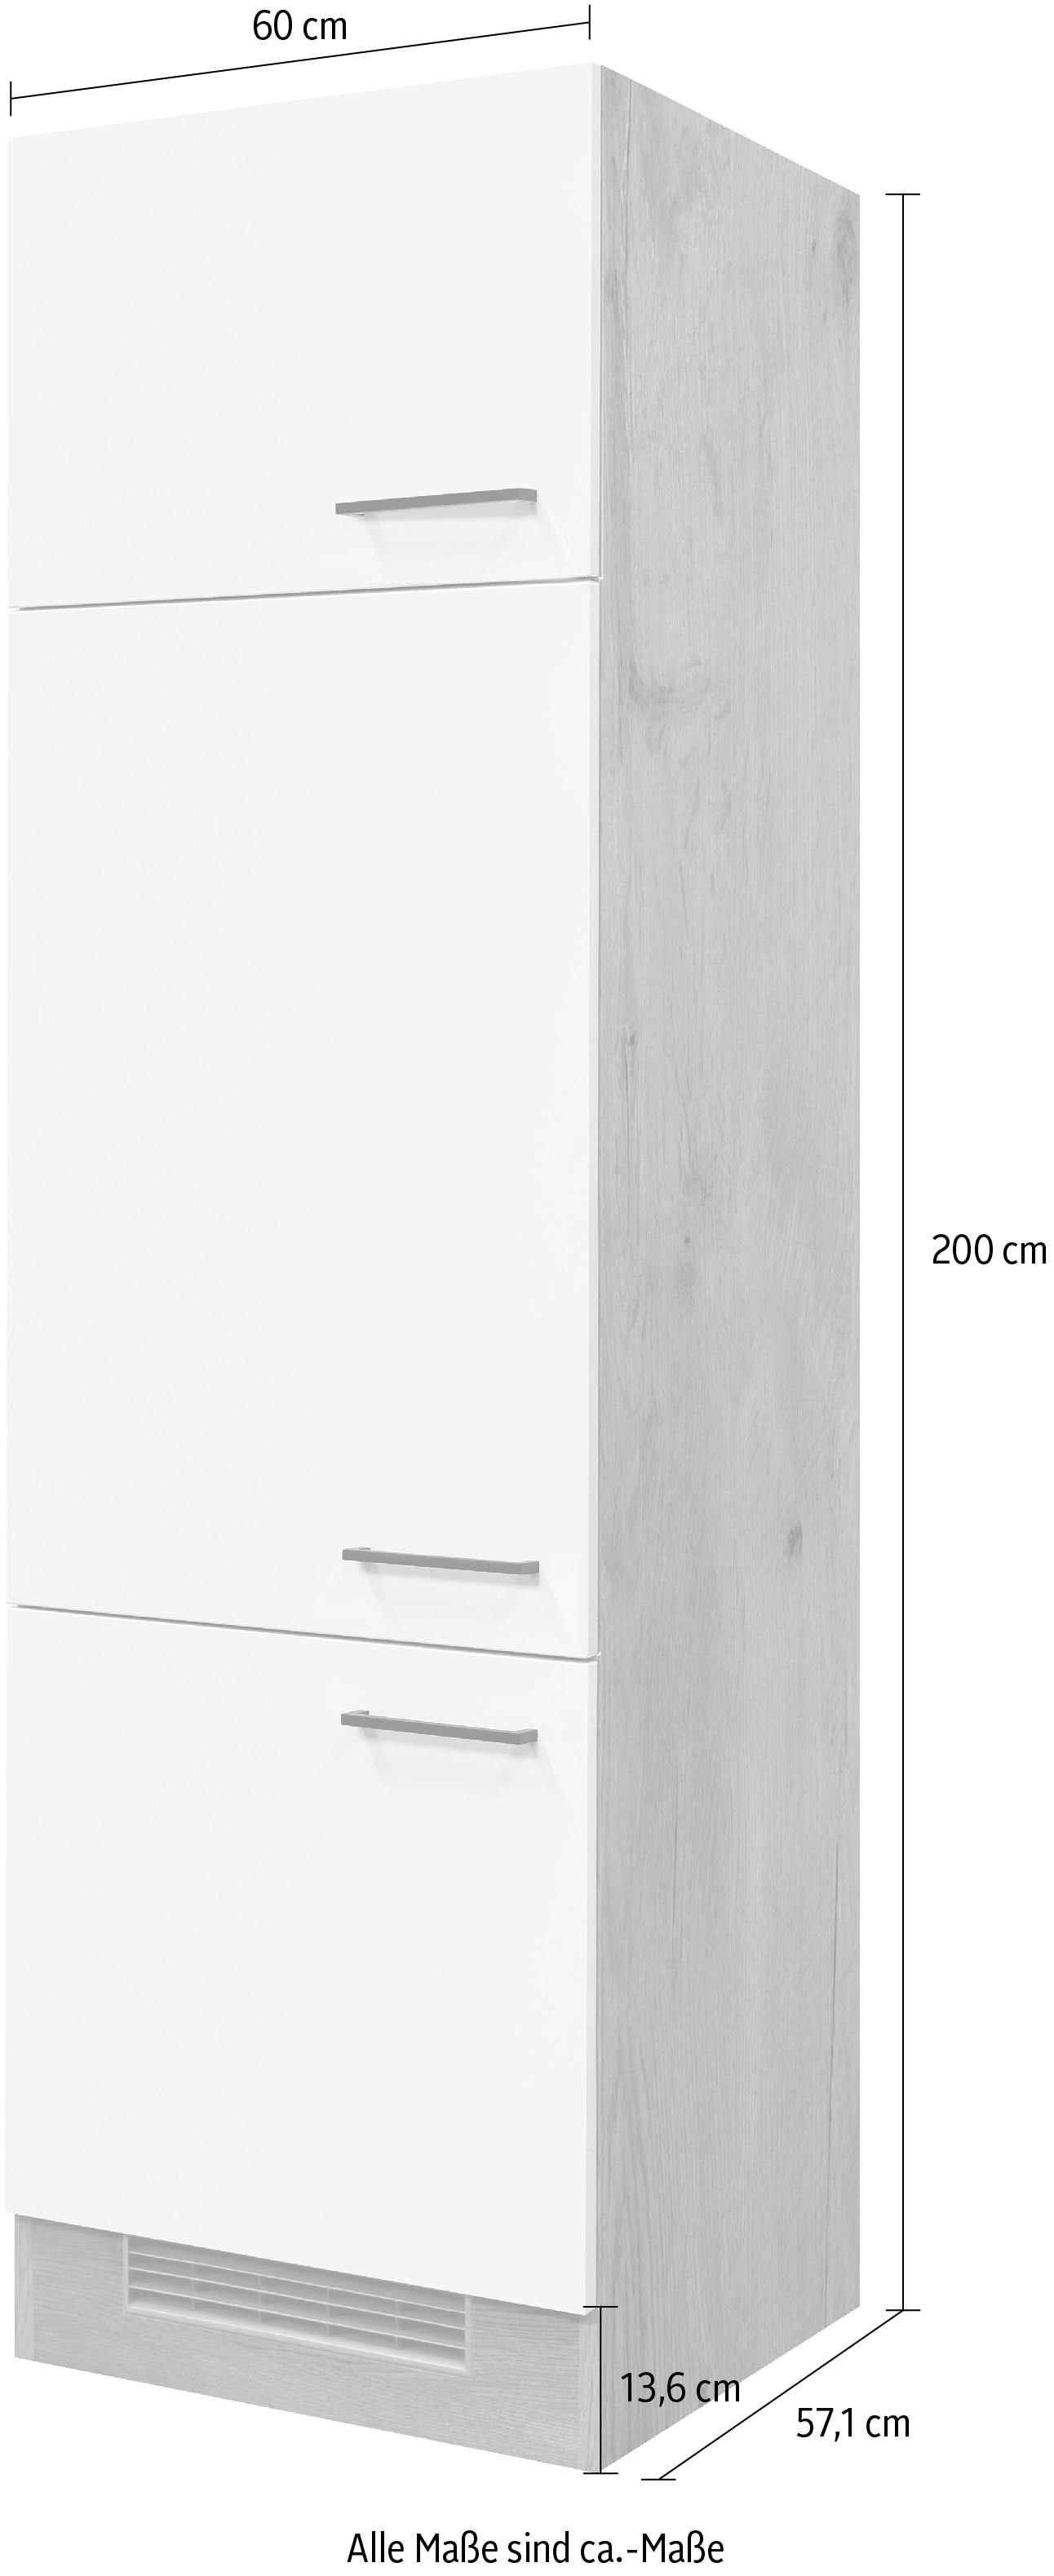 Flex-Well Küche »Morena«, 60 cm 200 cm breit, Kühlschrank kaufen auf hoch, Raten inklusive